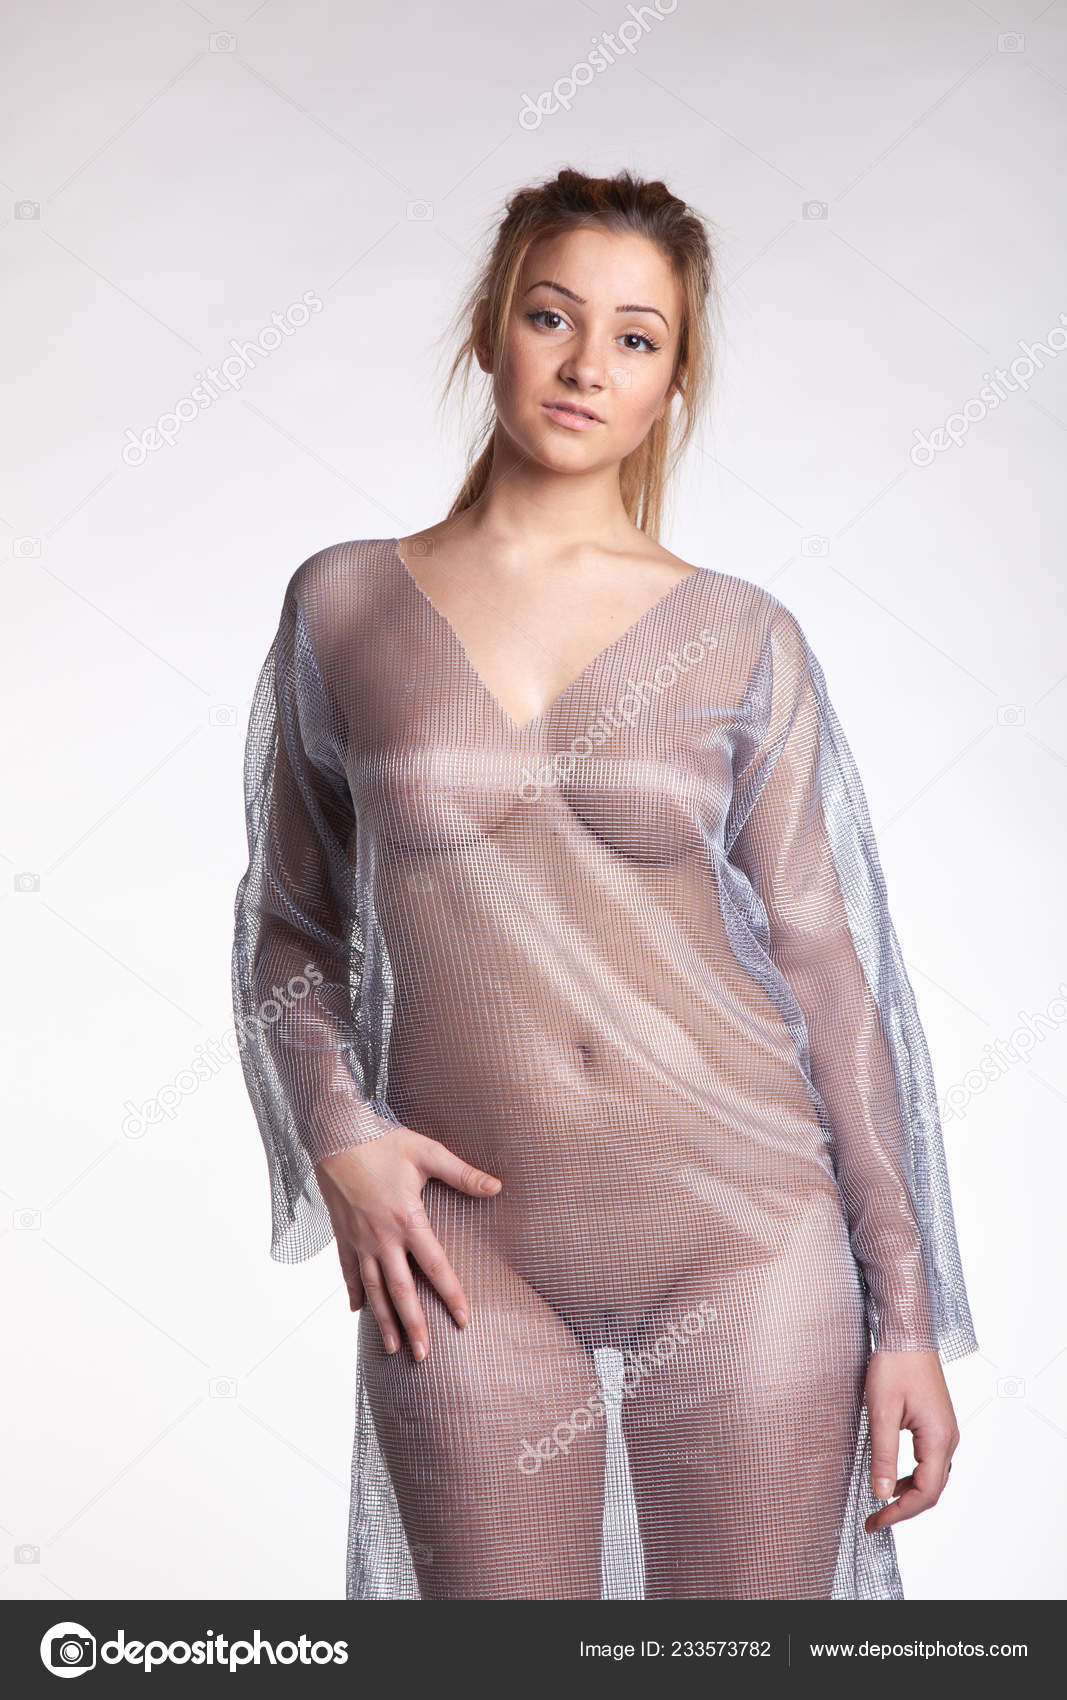 https://st4n.depositphotos.com/10086424/23357/i/1600/depositphotos_233573782-stock-photo-young-beautiful-girl-posing-nude.jpg